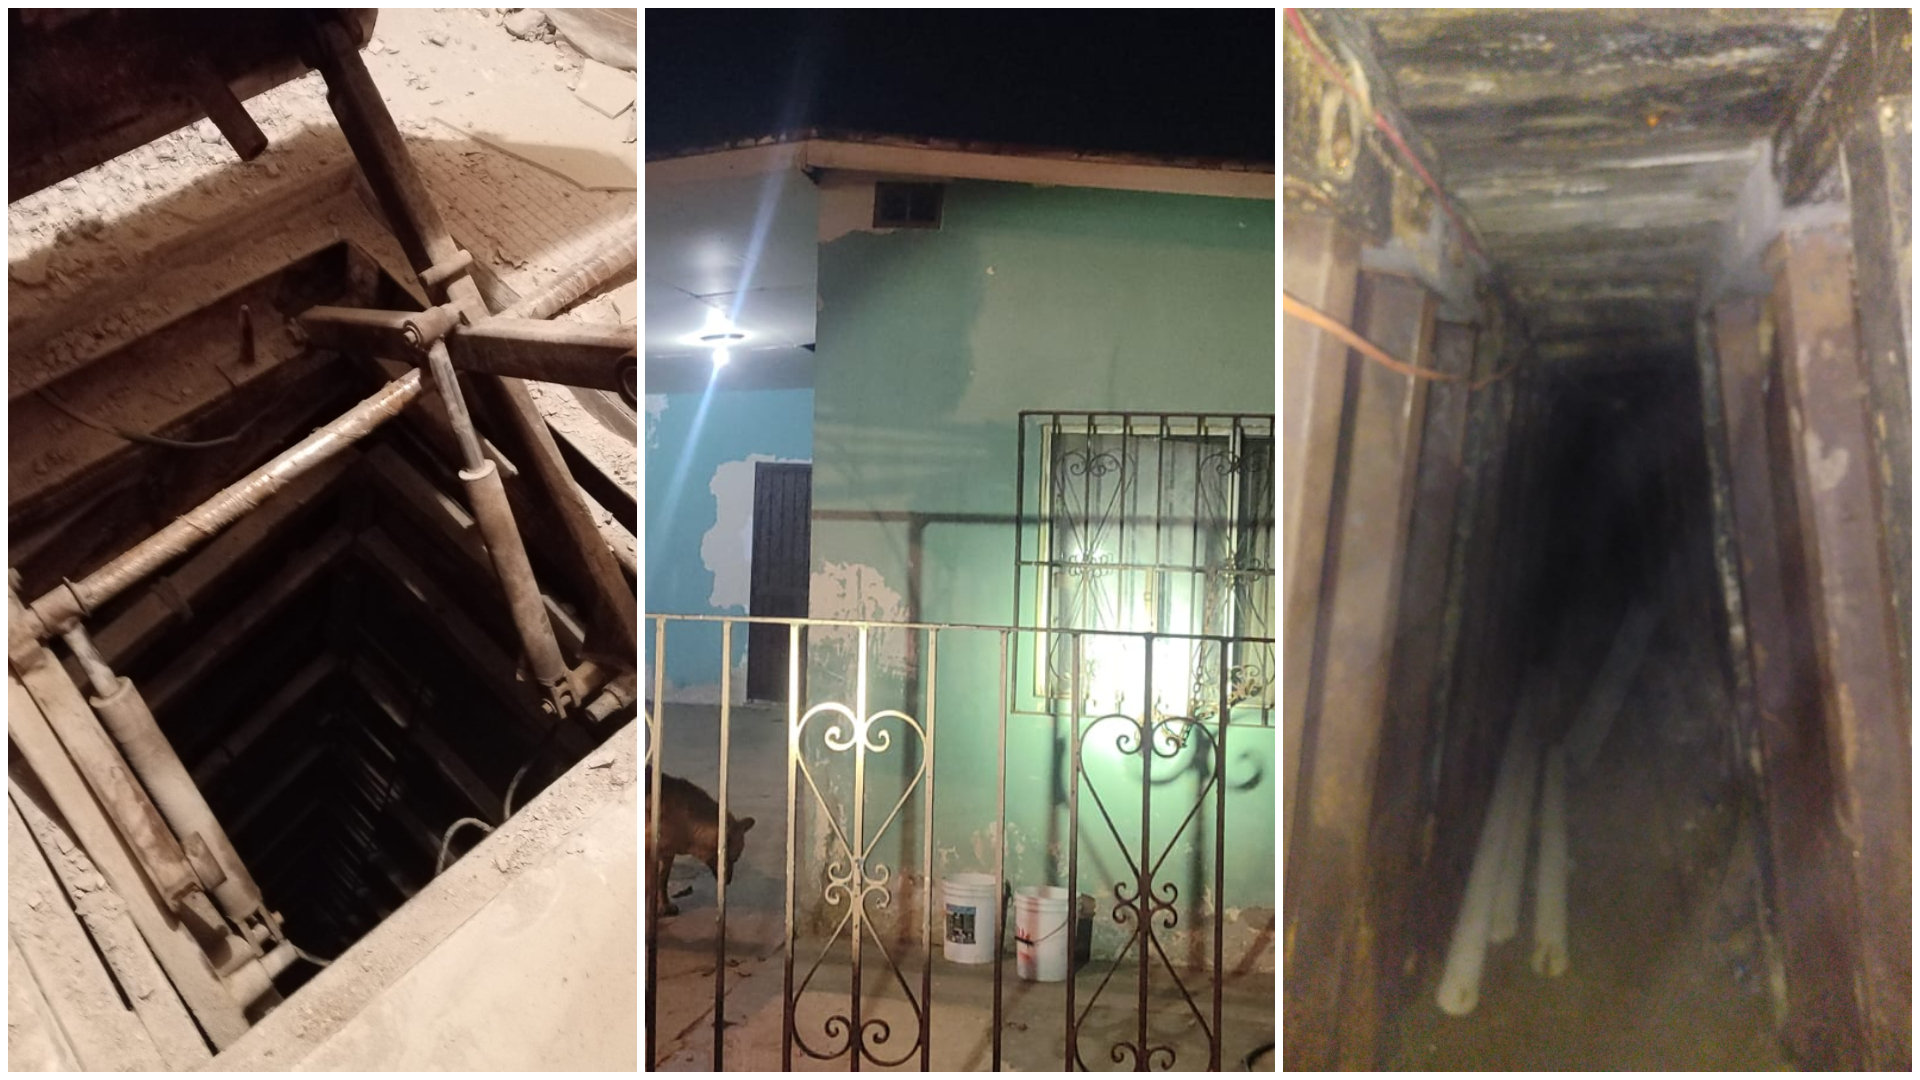 Energía eléctrica, rieles, vigas metálicas y ventilación: así es el “narcotúnel” del Cártel de Sinaloa encontrado en Tijuana